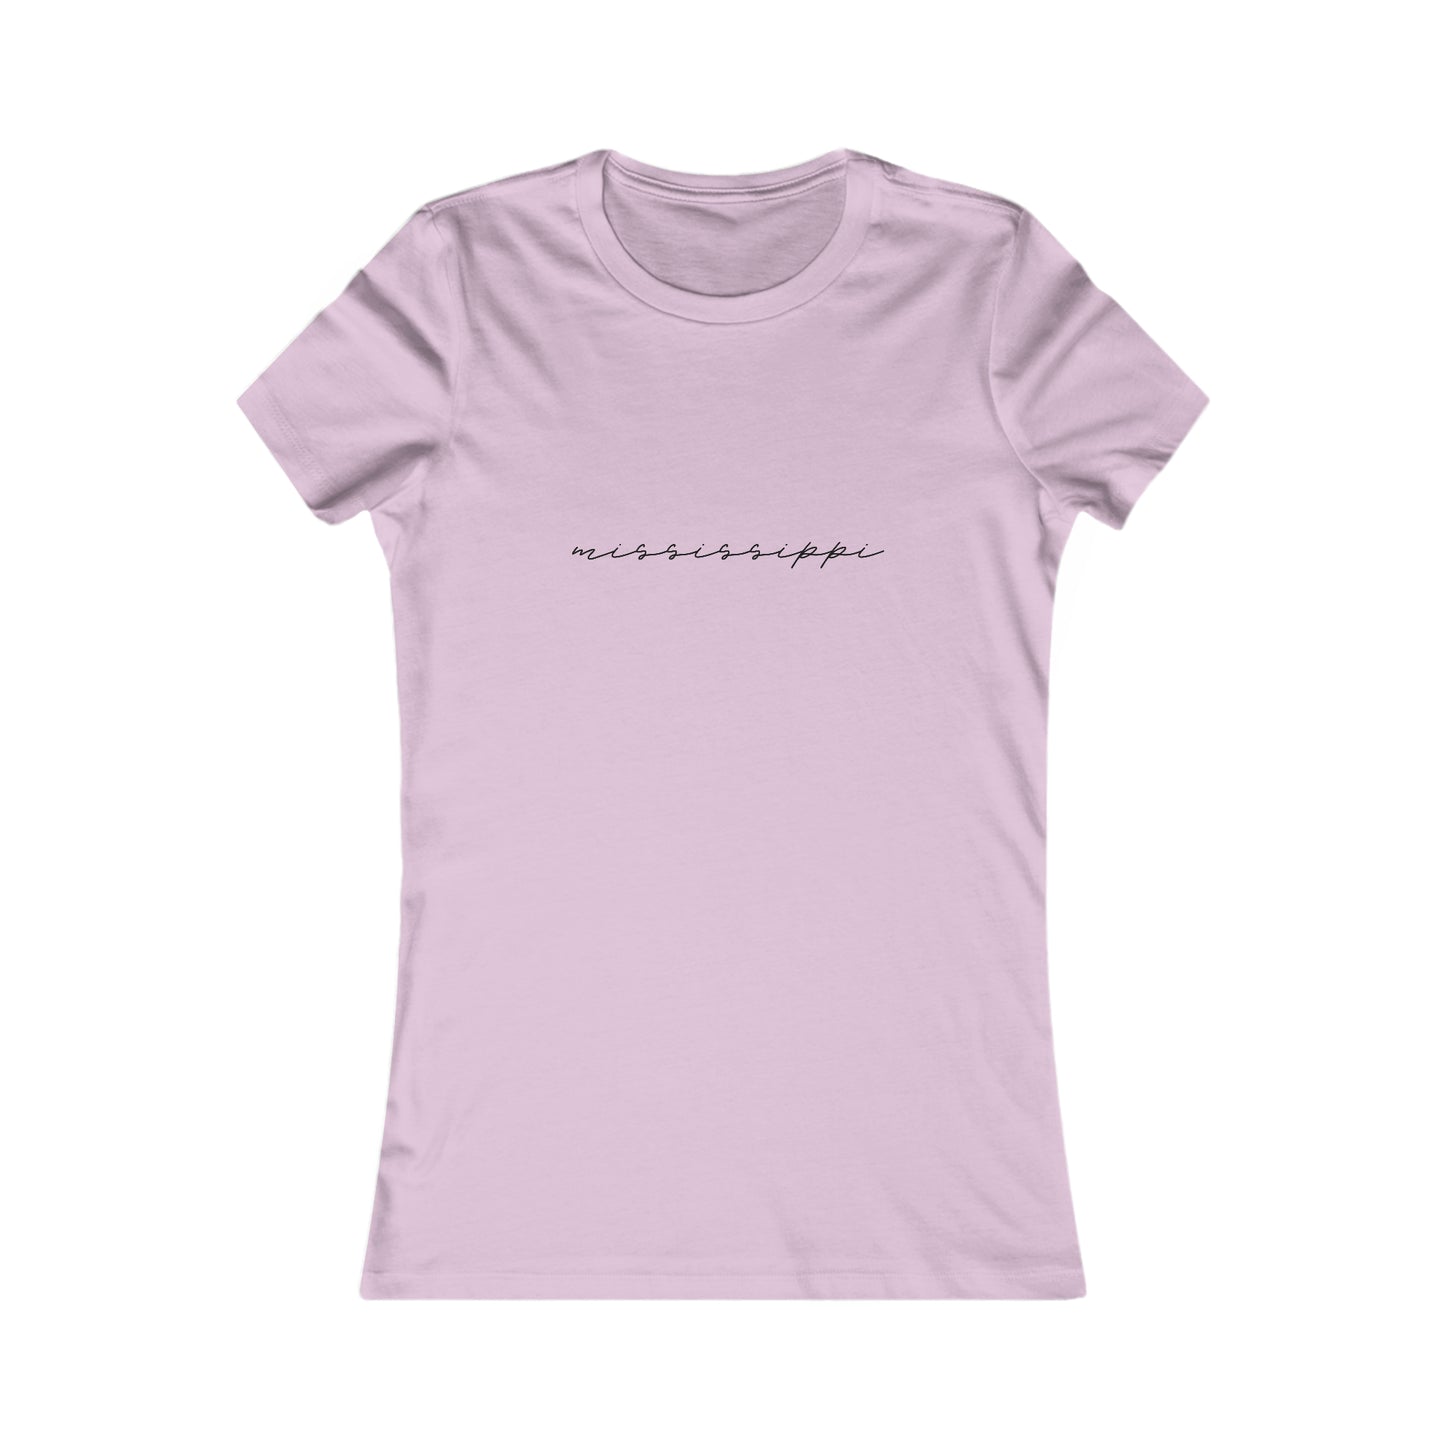 Mississippi Cursive Women's Shirt